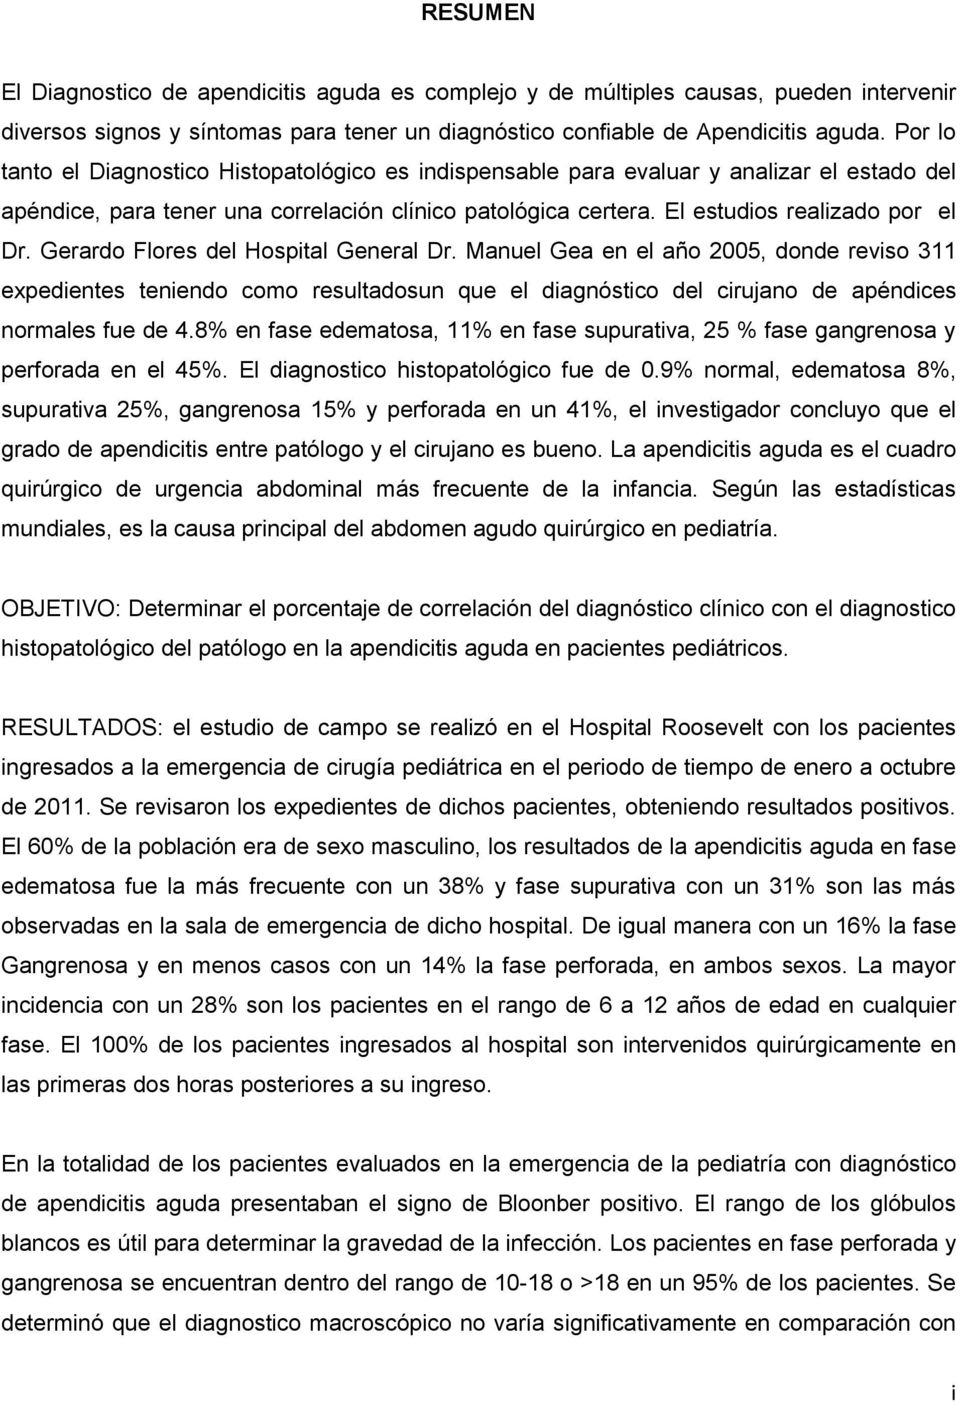 Gerardo Flores del Hospital General Dr. Manuel Gea en el año 2005, donde reviso 311 expedientes teniendo como resultadosun que el diagnóstico del cirujano de apéndices normales fue de 4.